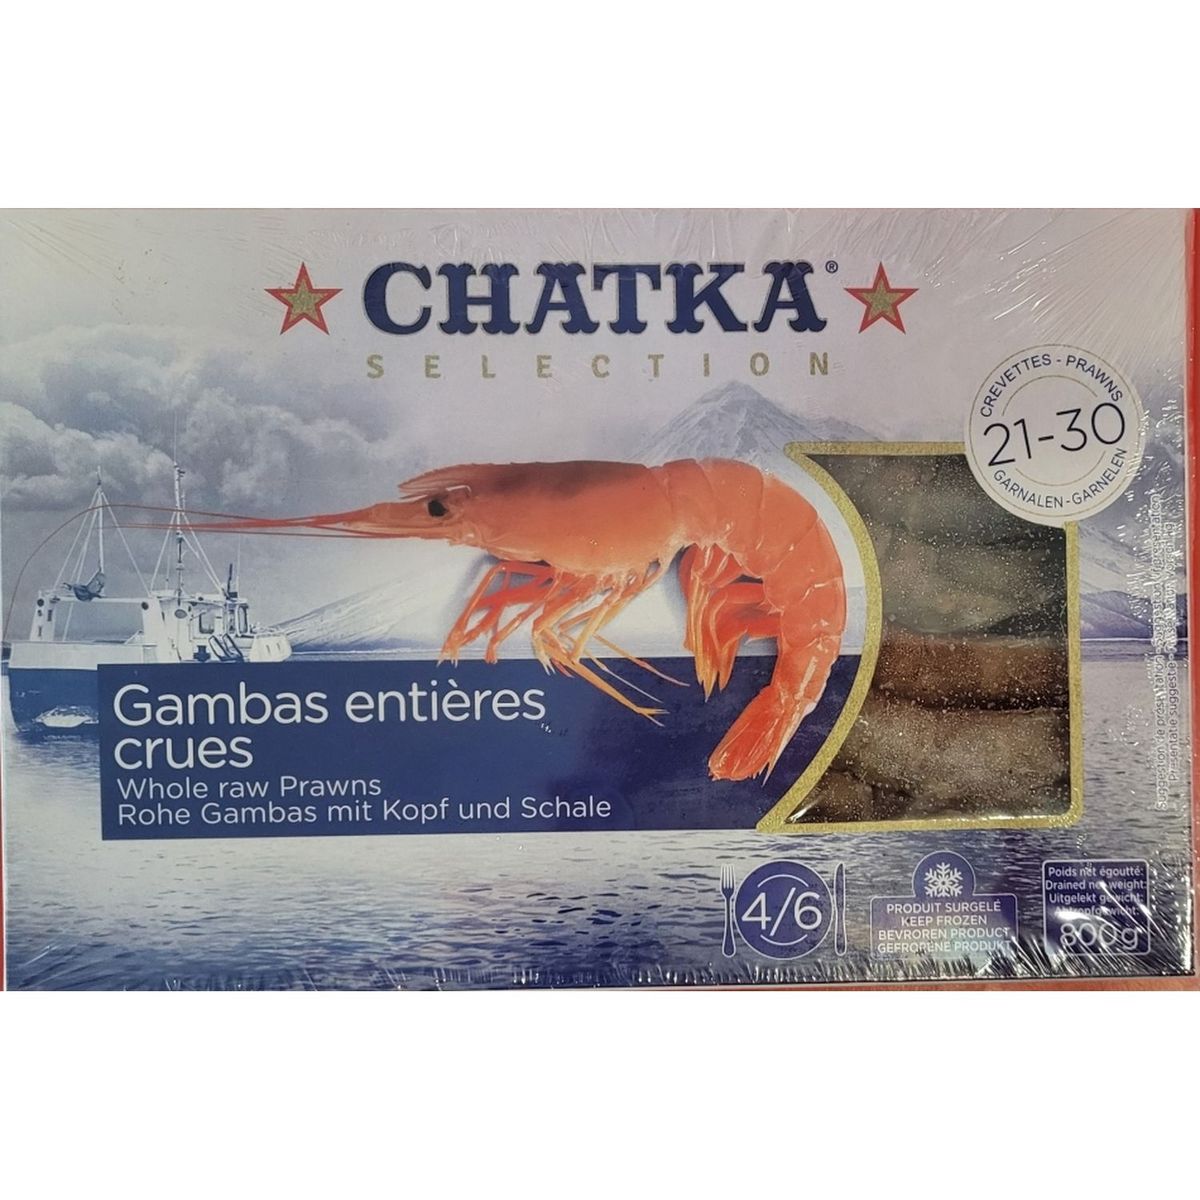 CHATKA Crevettes sauvages de Patagonie crues entières 4-6 portions 800g